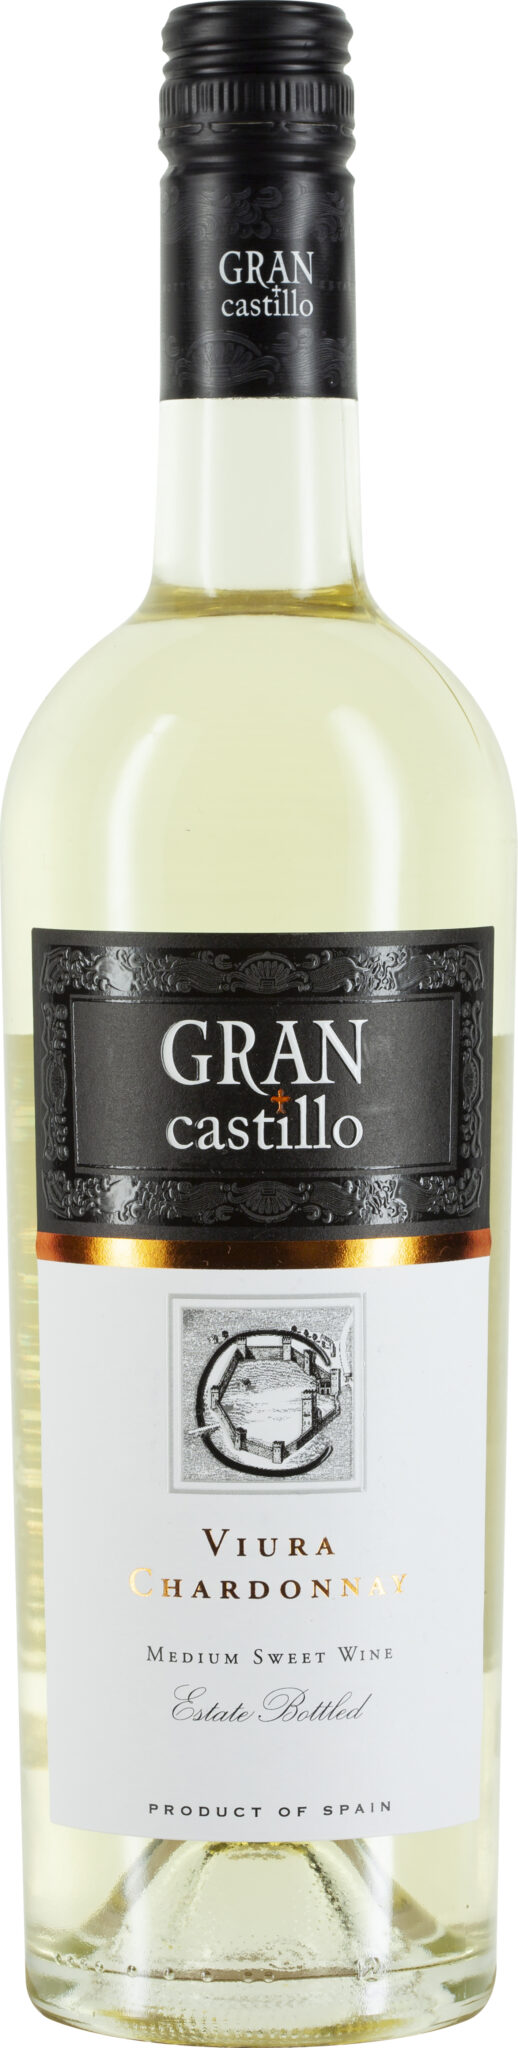 Gran Castillo, Viura Chardonnay Valencia DOP